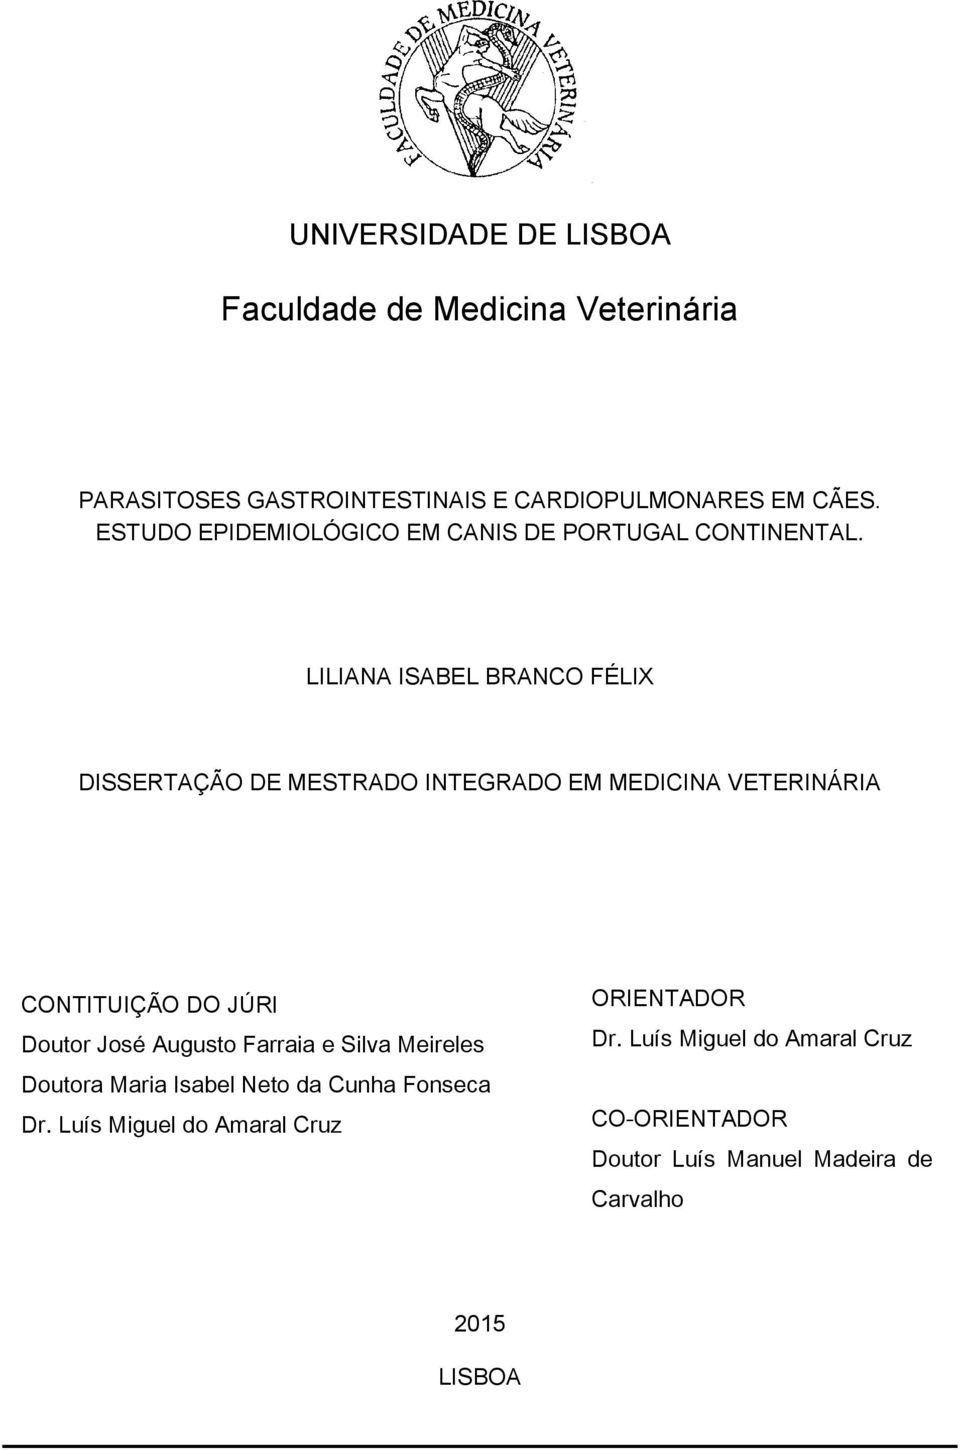 LILIANA ISABEL BRANCO FÉLIX DISSERTAÇÃO DE MESTRADO INTEGRADO EM MEDICINA VETERINÁRIA CONTITUIÇÃO DO JÚRI Doutor José Augusto